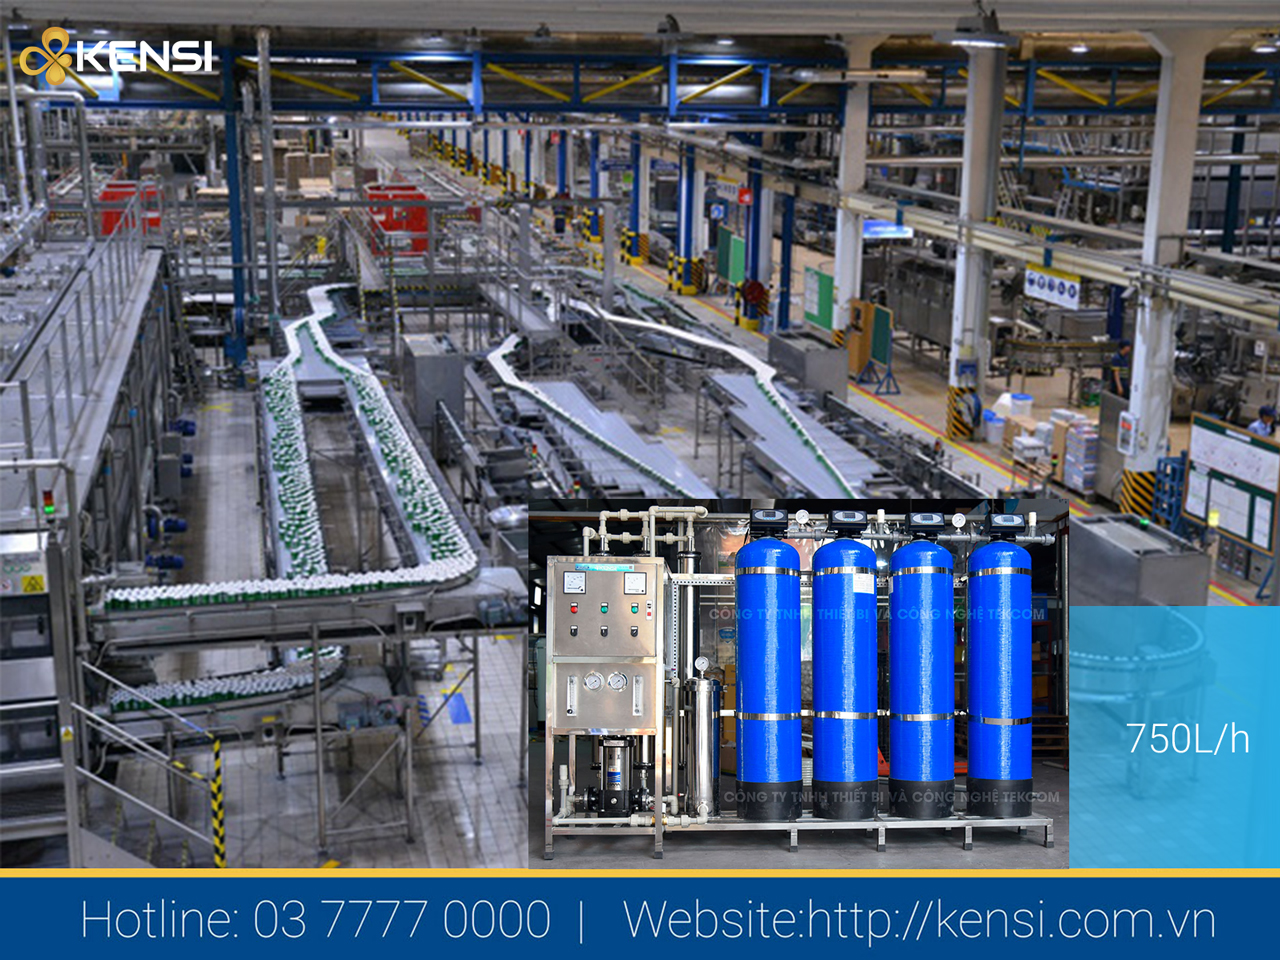 Hệ thống lọc nước xử lý hiệu quả nguồn nước bẩn ô nhiễm tại các xưởng sản suất, chế biến